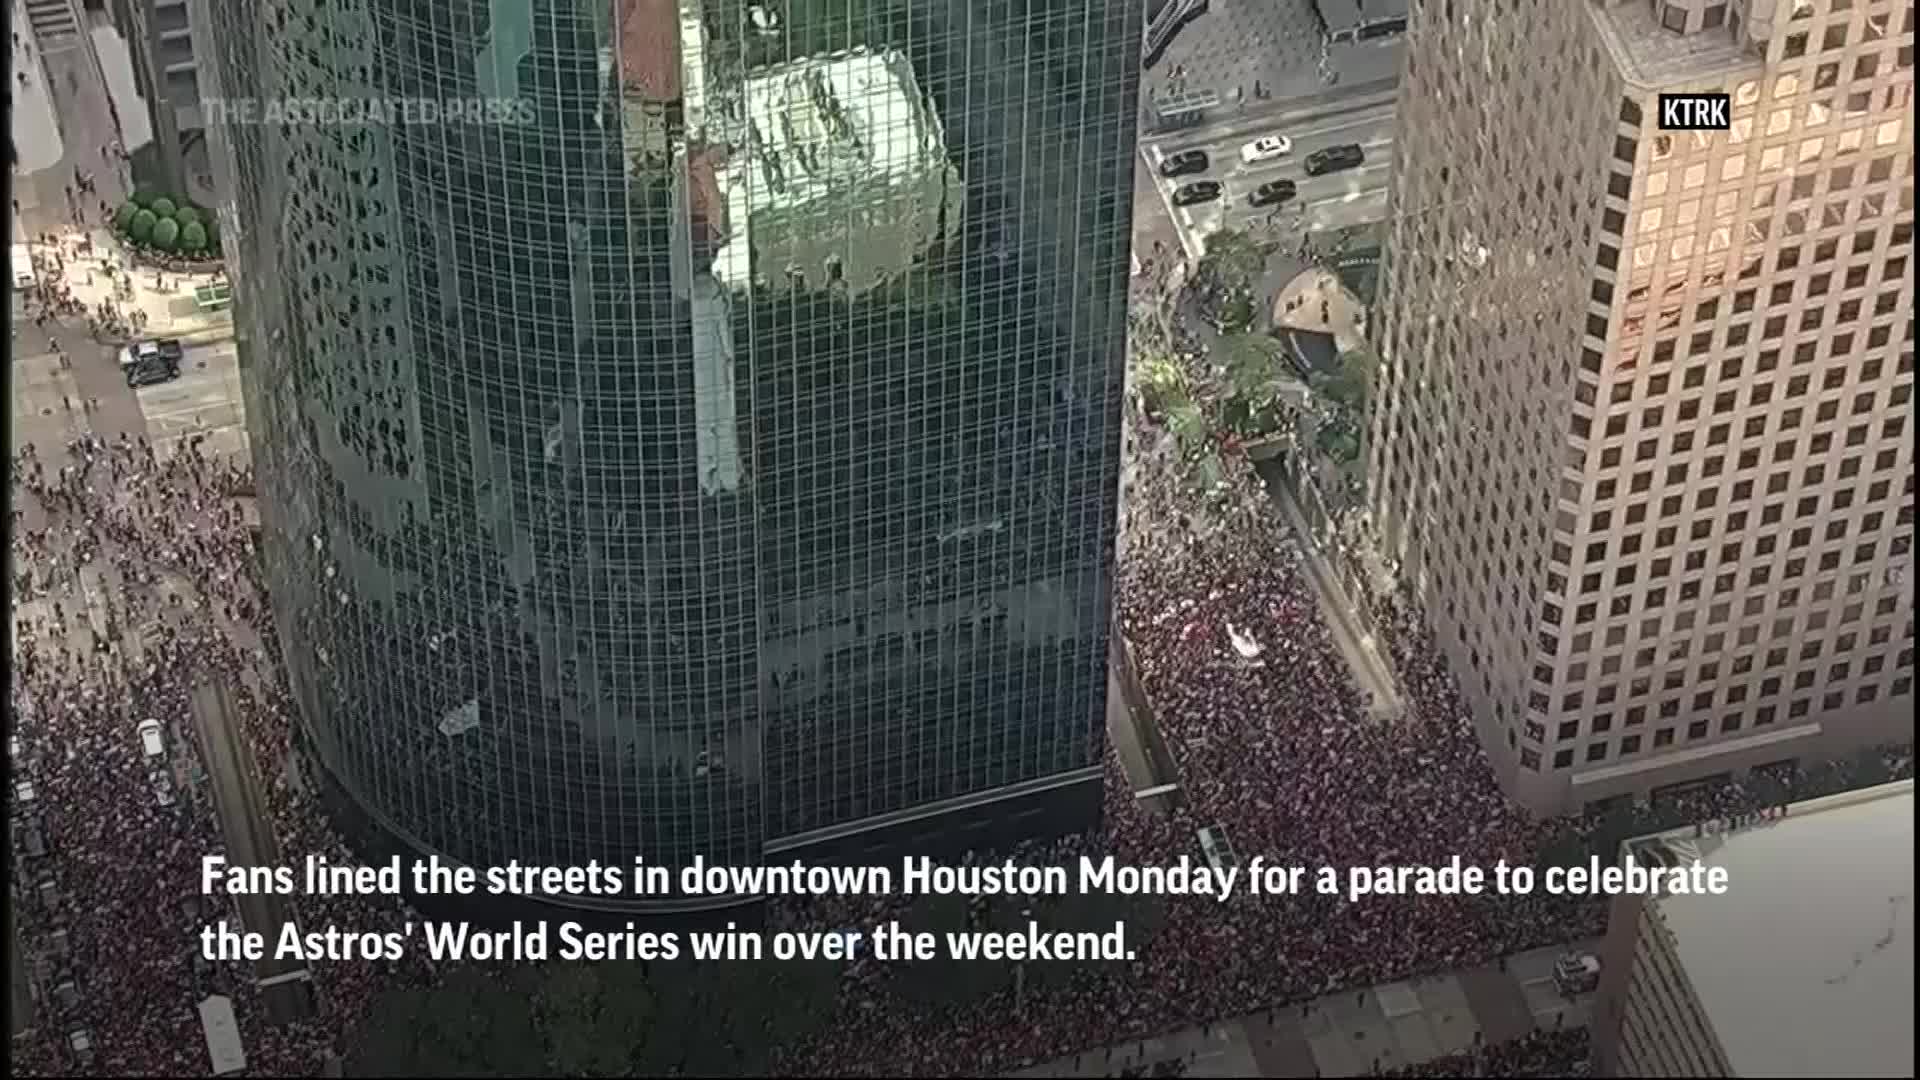 Houston celebrates Astros' World Series win